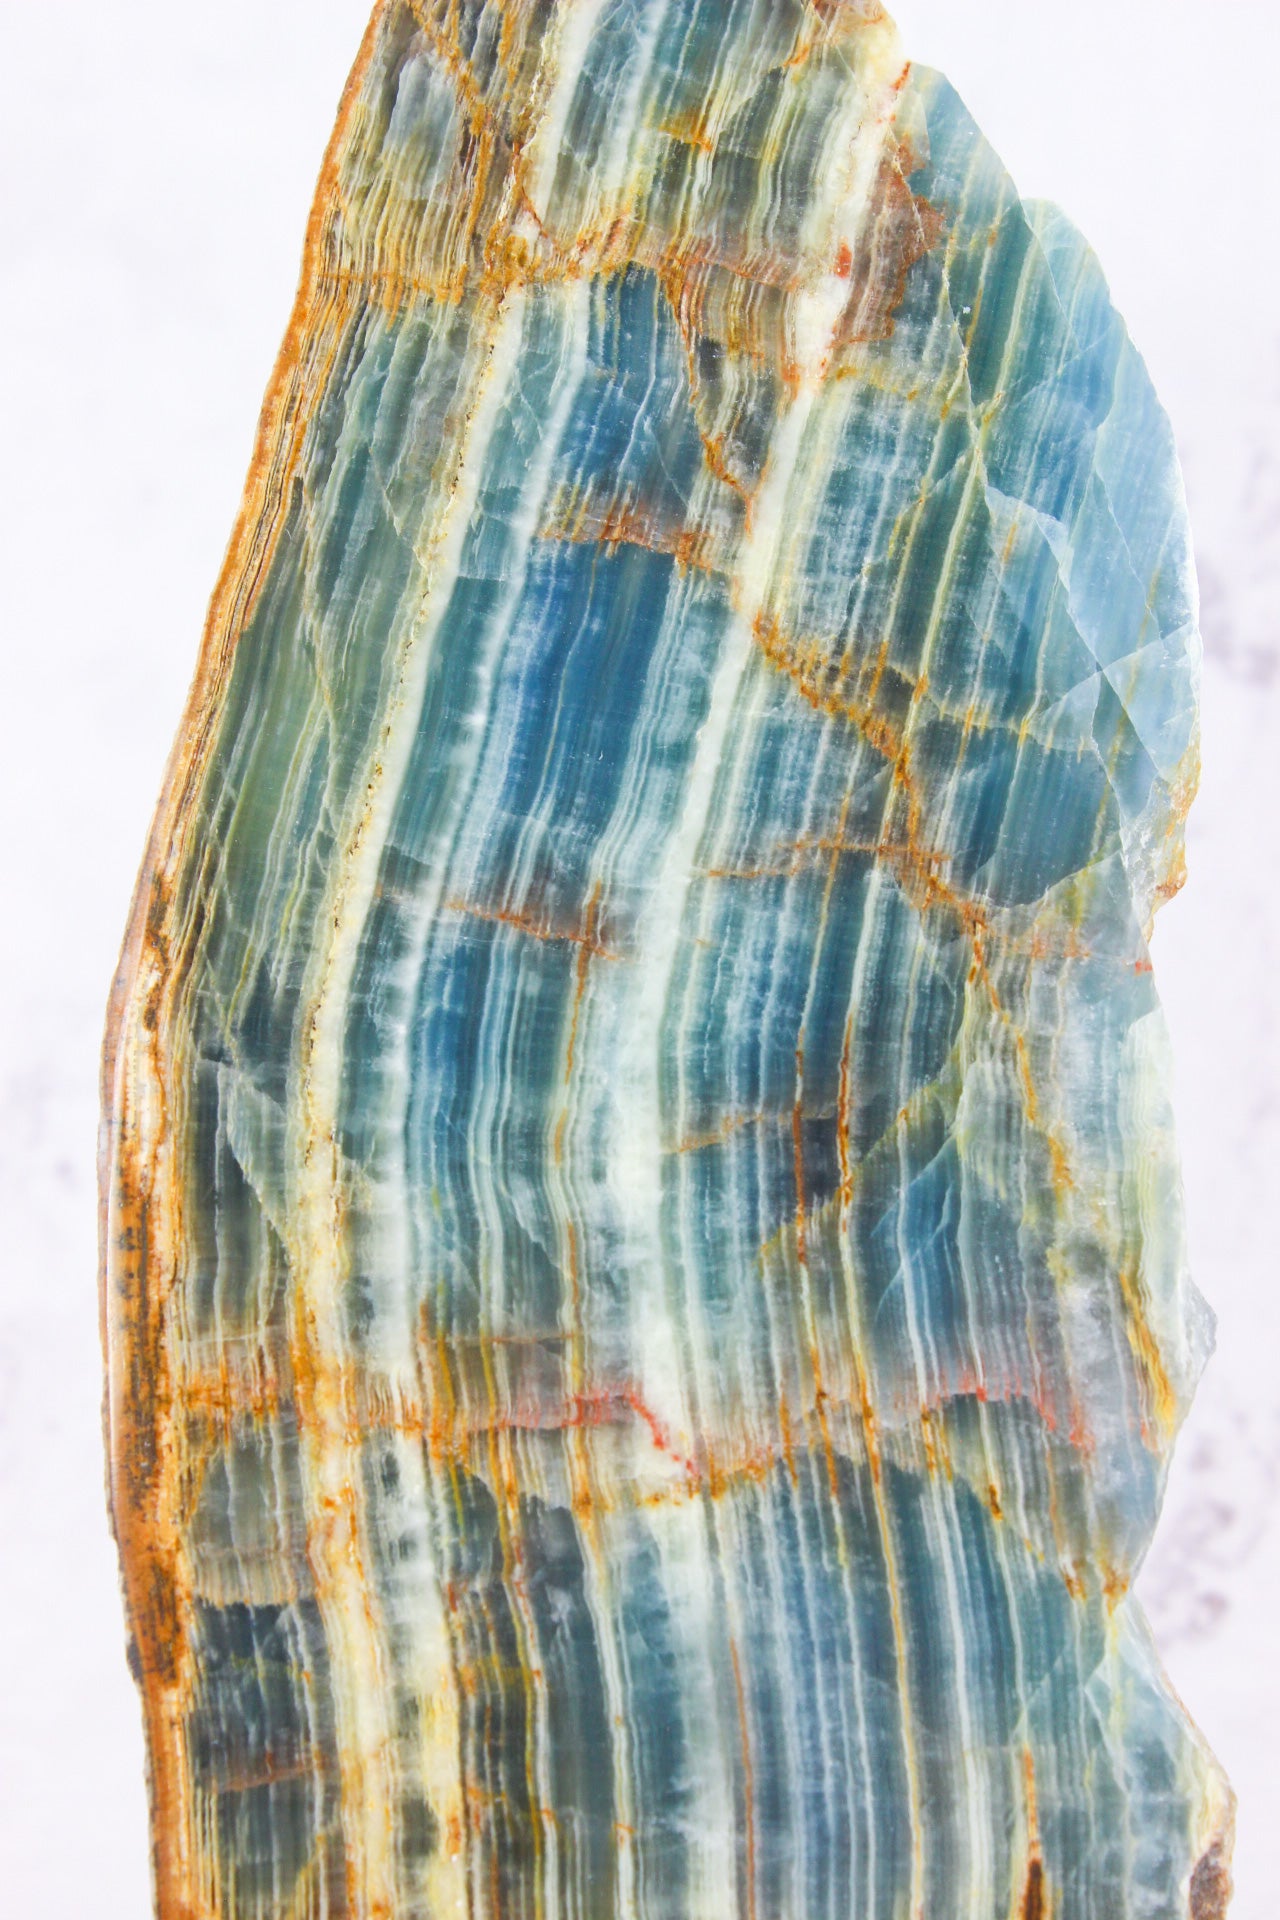 Blue Calcite Onyx Slab